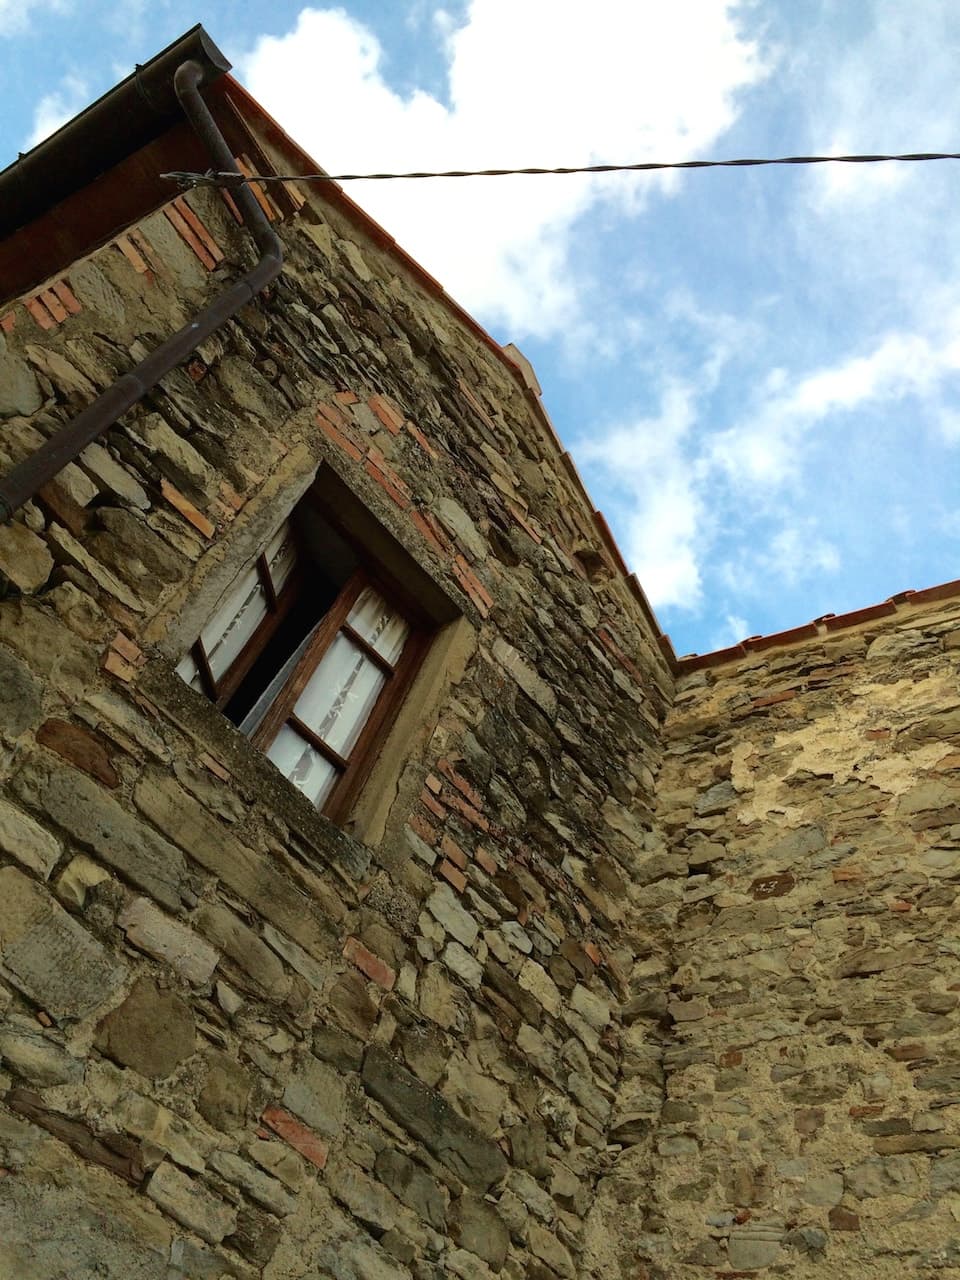 Abitazione in pietra a Moggiona